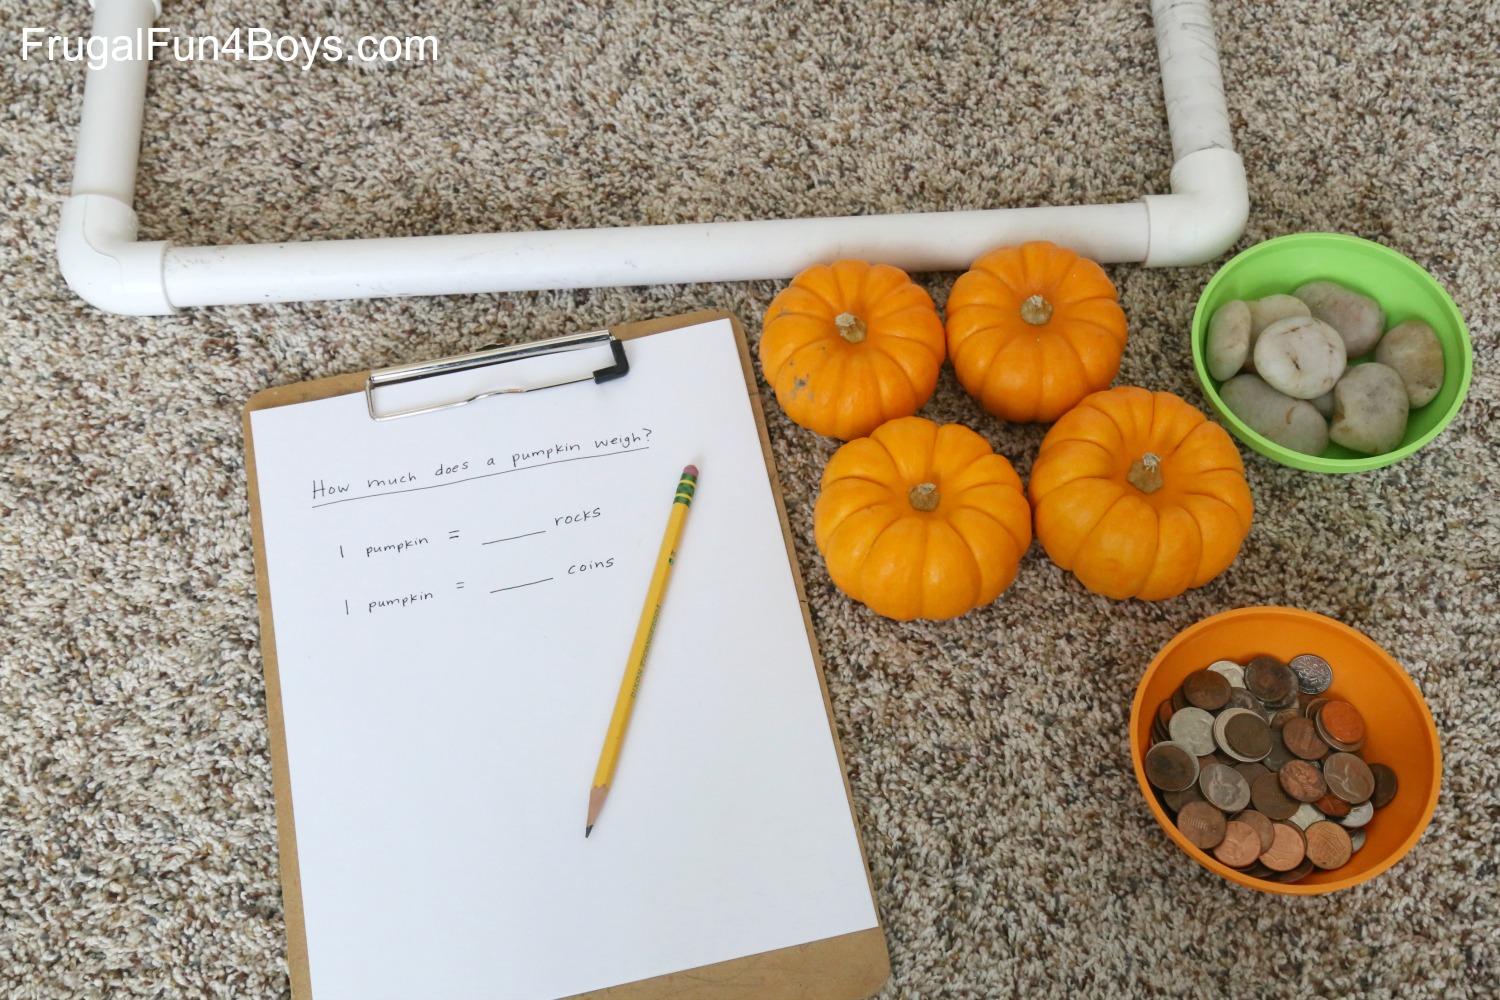 Fall Math: How Heavy is a Pumpkin?